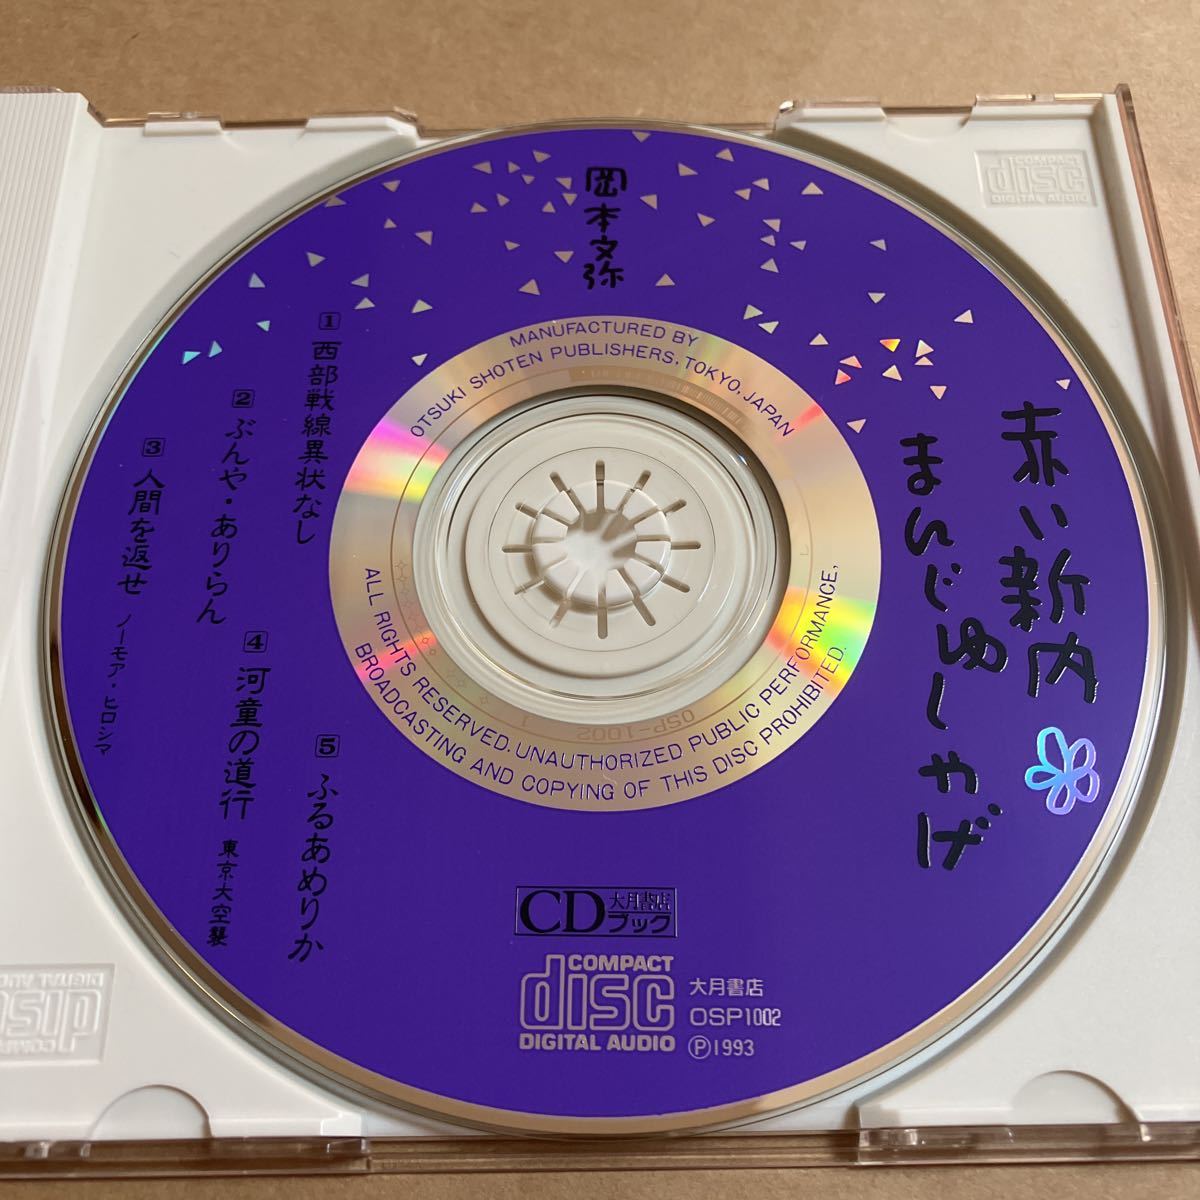 CD 岡本文弥 / 赤い新内 まんじゅしゃげ OSP1002 三味線 琴 大月書店 帯無し_画像3